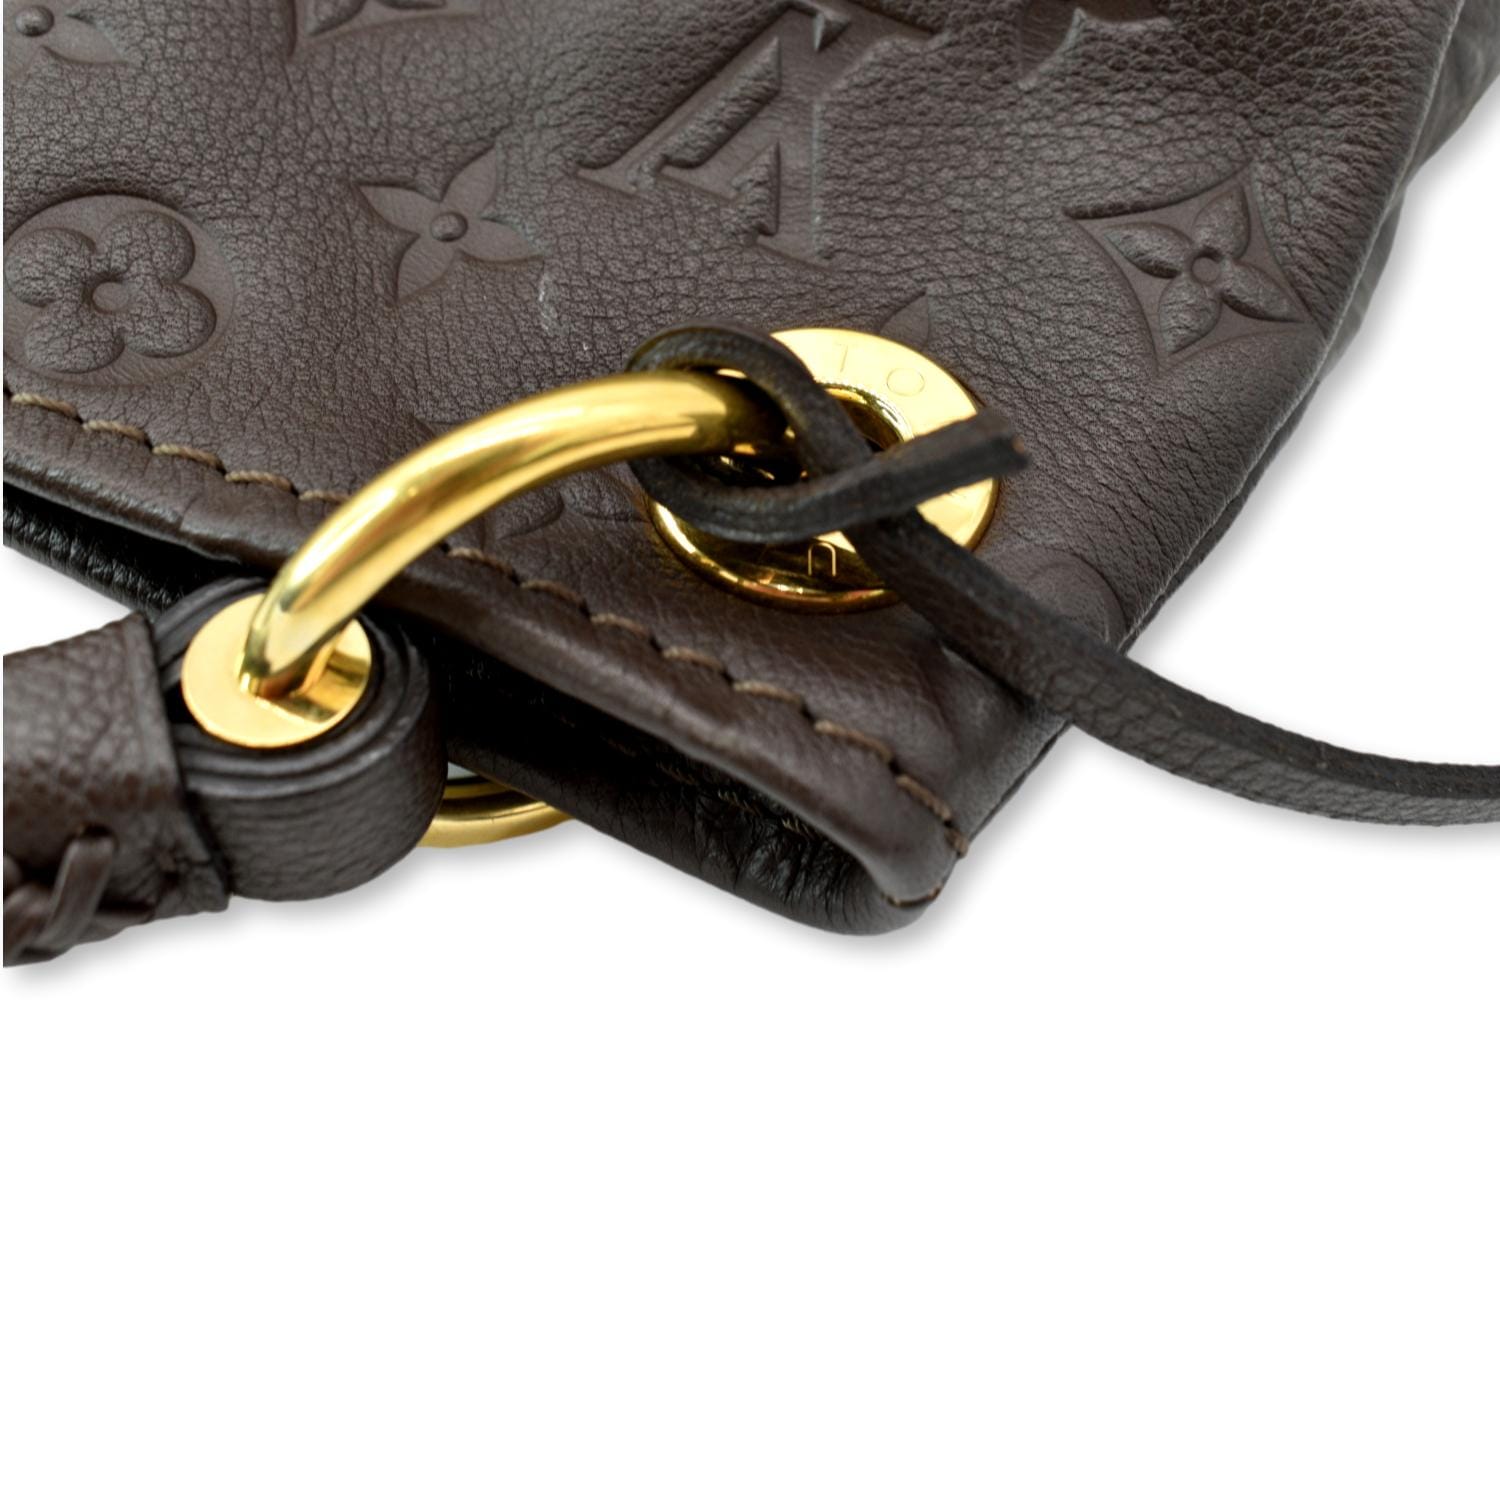 Louis Vuitton Empreinte Artsy MM - Brown Totes, Handbags - LOU765724